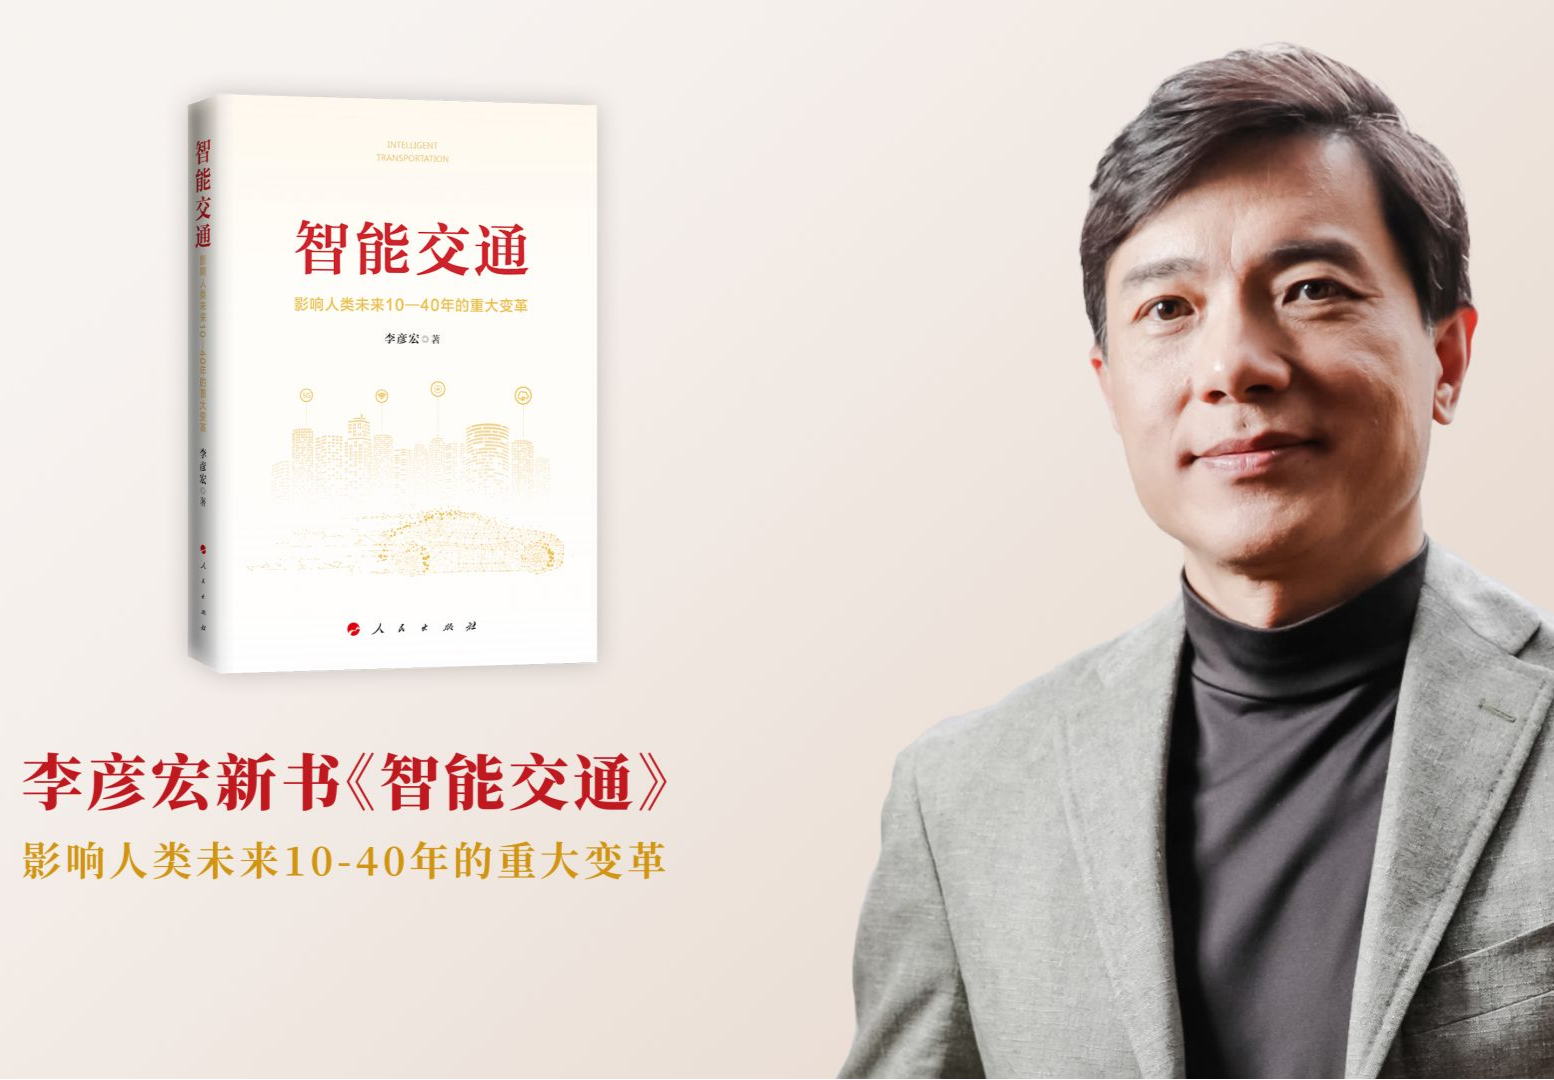 百度李彦宏新书《智能交通》正式发行 系国内首部全面阐述智能交通“中国模式”专著